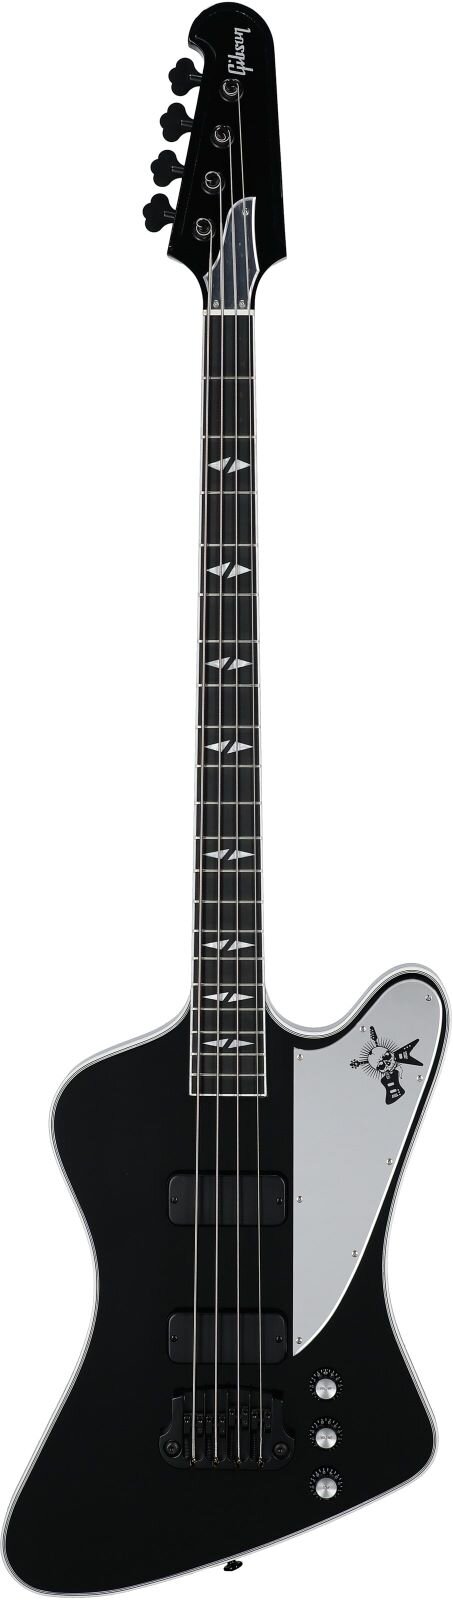 Gibson Thunderbird G2 Gene Simmons - Schwarzer Spiegel  : photo 1